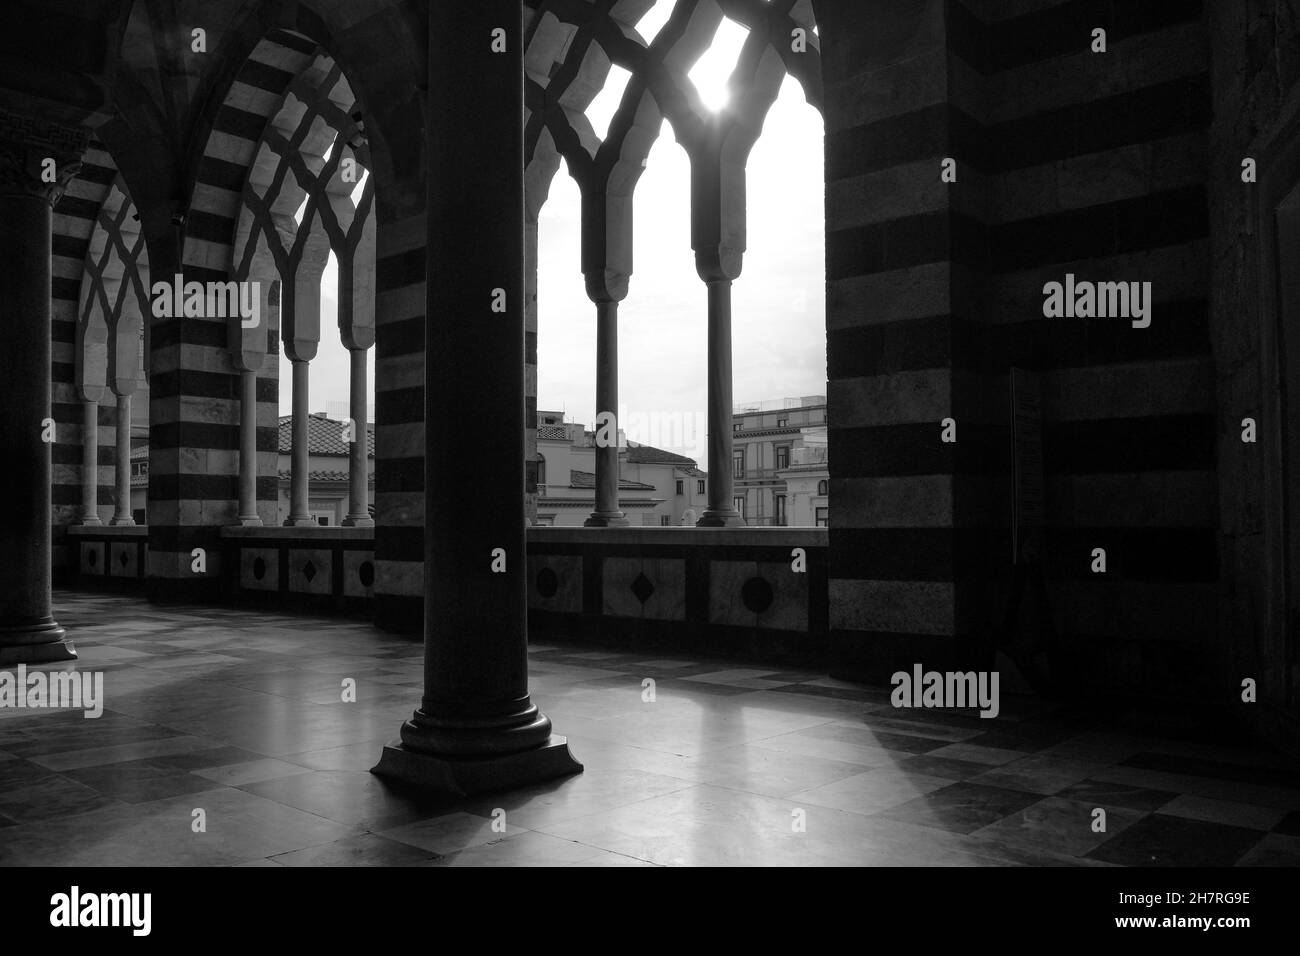 Veduta interna della Cattedrale Cattolica Romana medievale in Piazza del Duomo Amalfi, Costiera Amalfitana, Salerno, Campania, Italia. Immagine in bianco e nero. Foto Stock